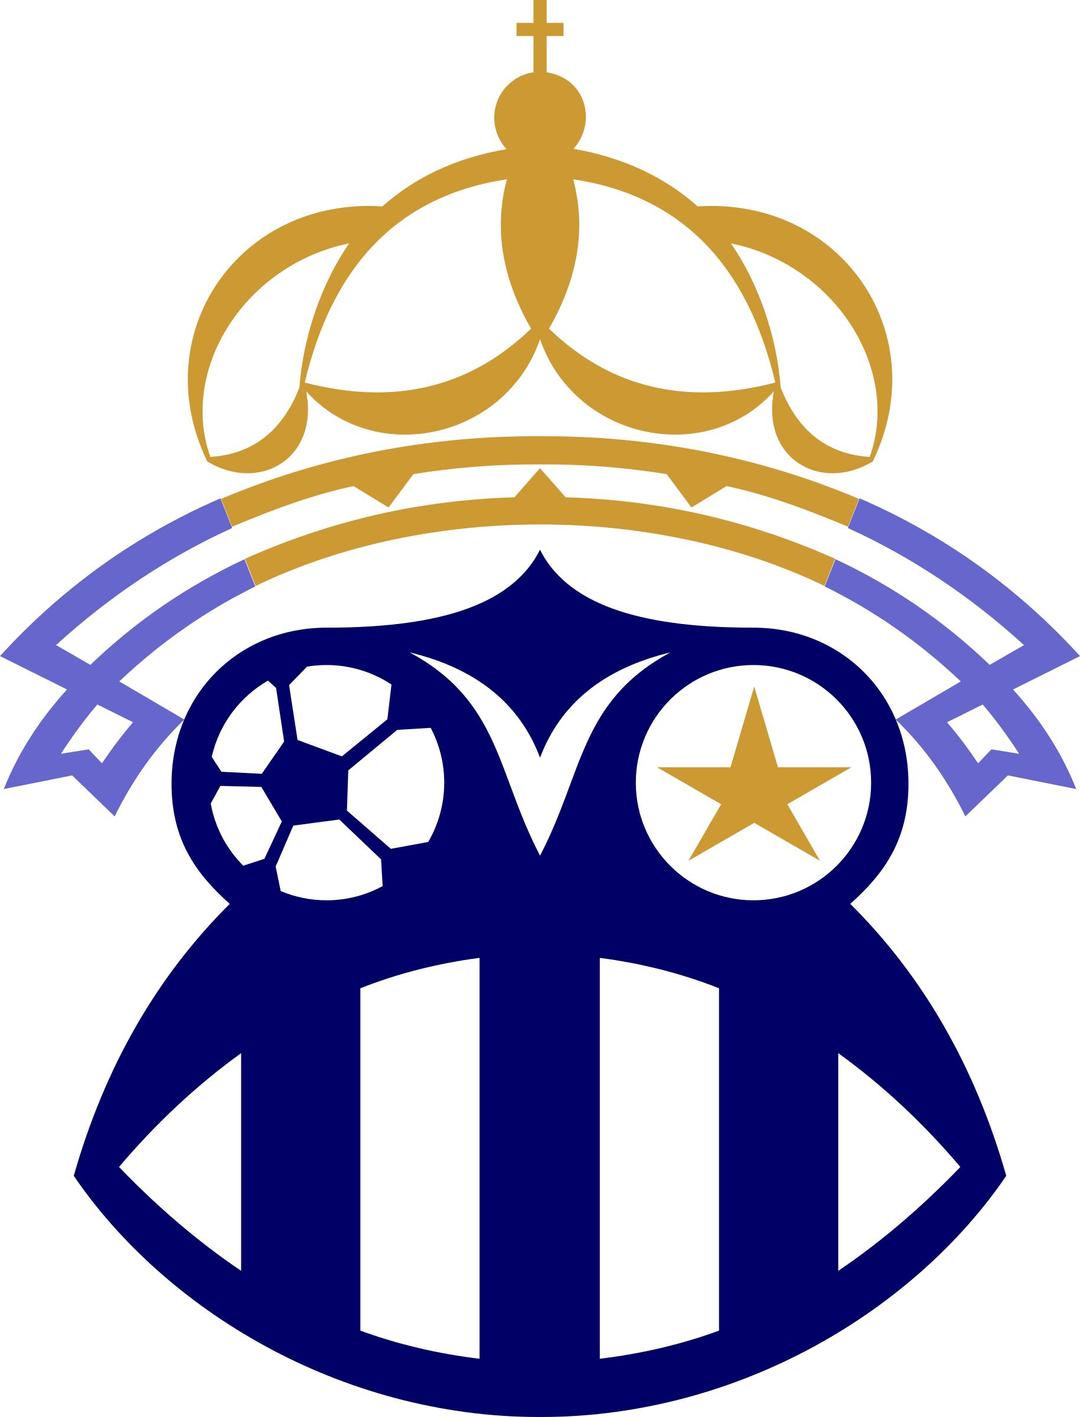 logo-frog-soccer-club png transparent